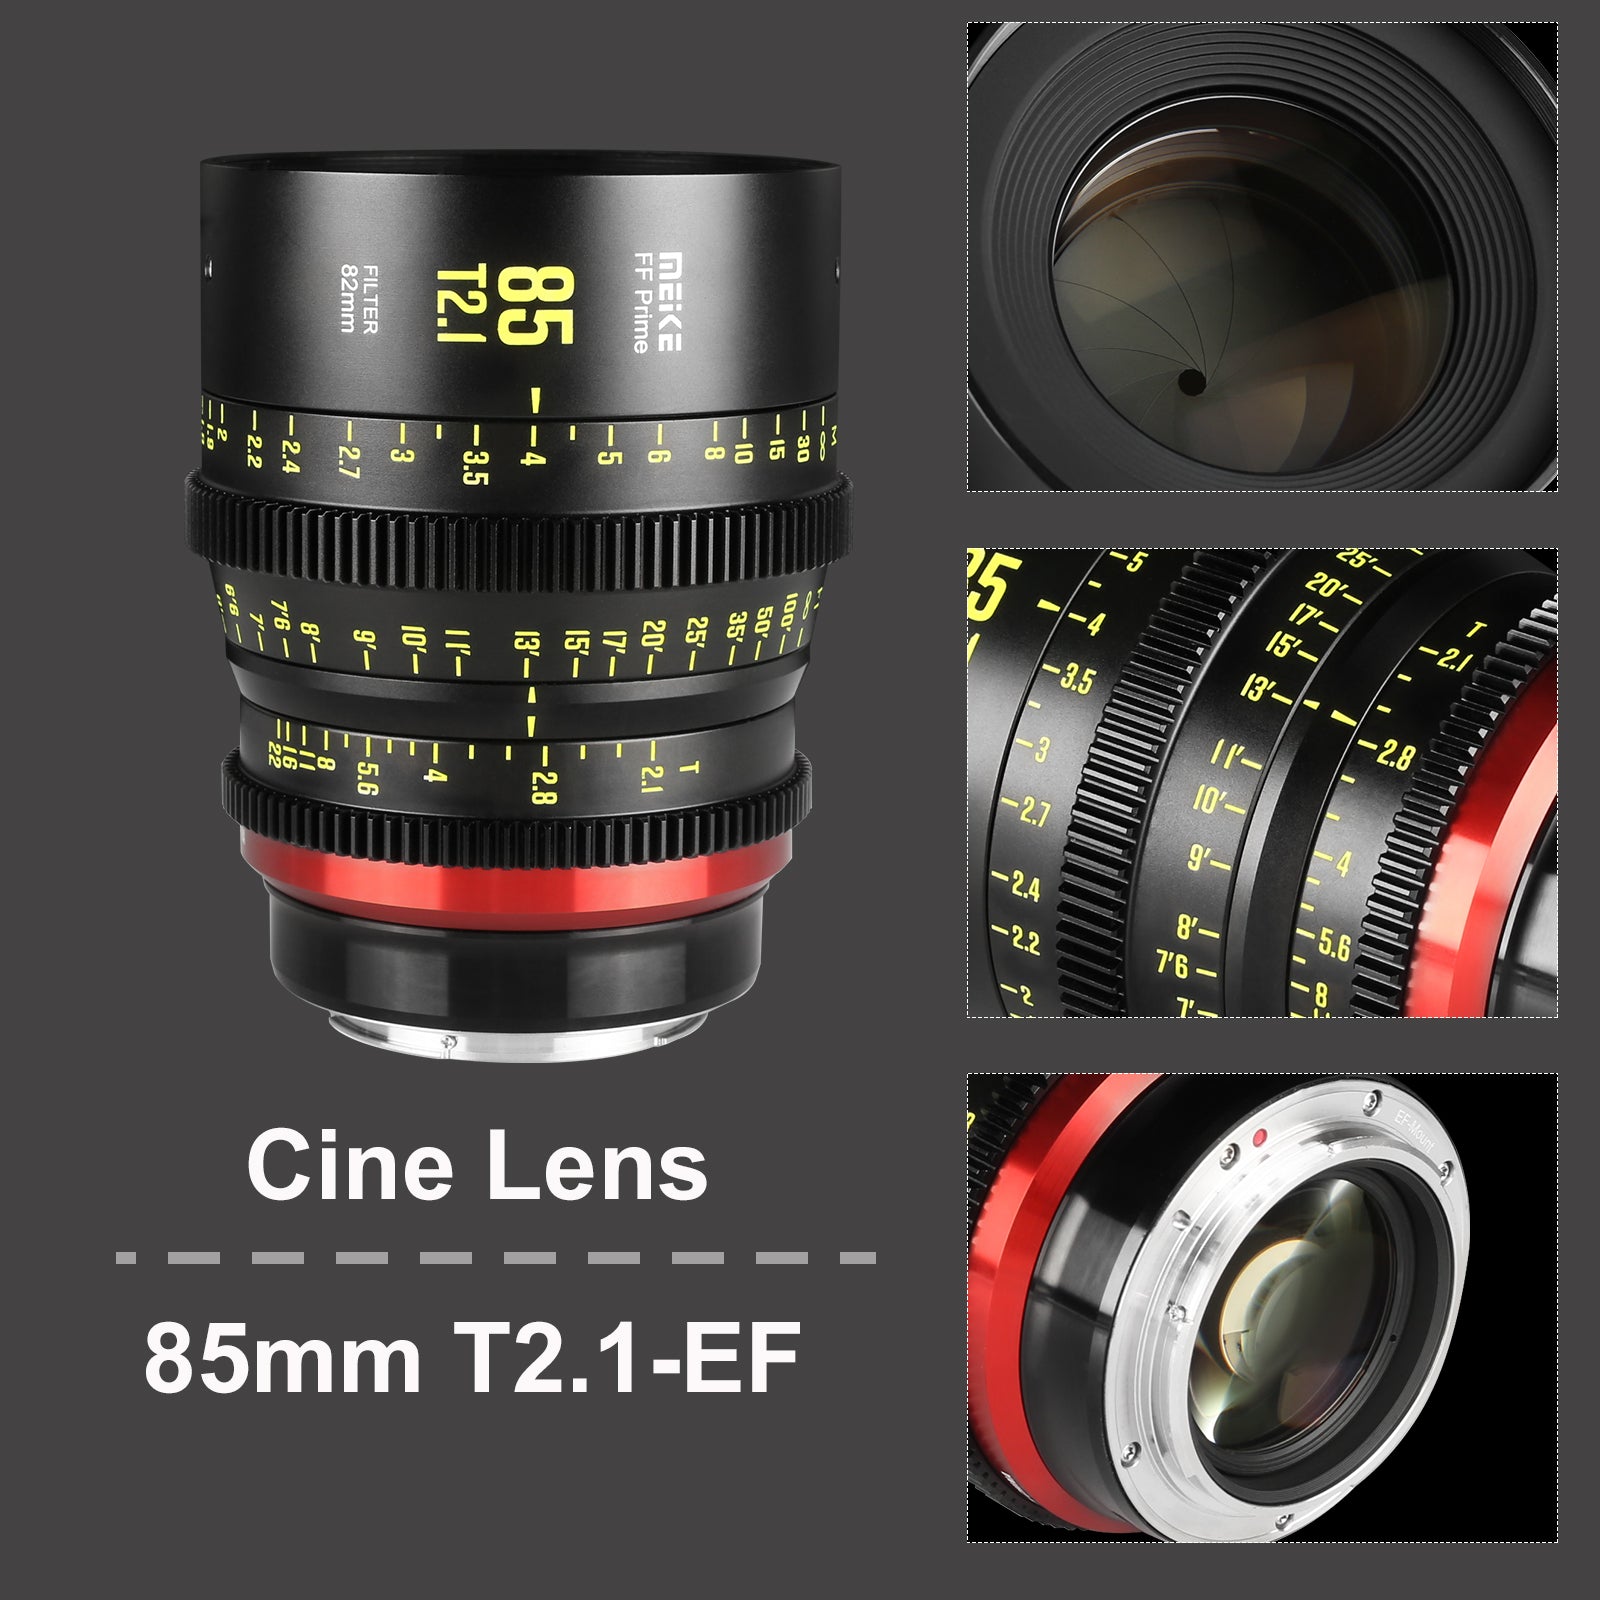 Meike Cinema Full Frame Cinema Prime 85mm T2.1 Lens (L Mount) in Different Perspectives